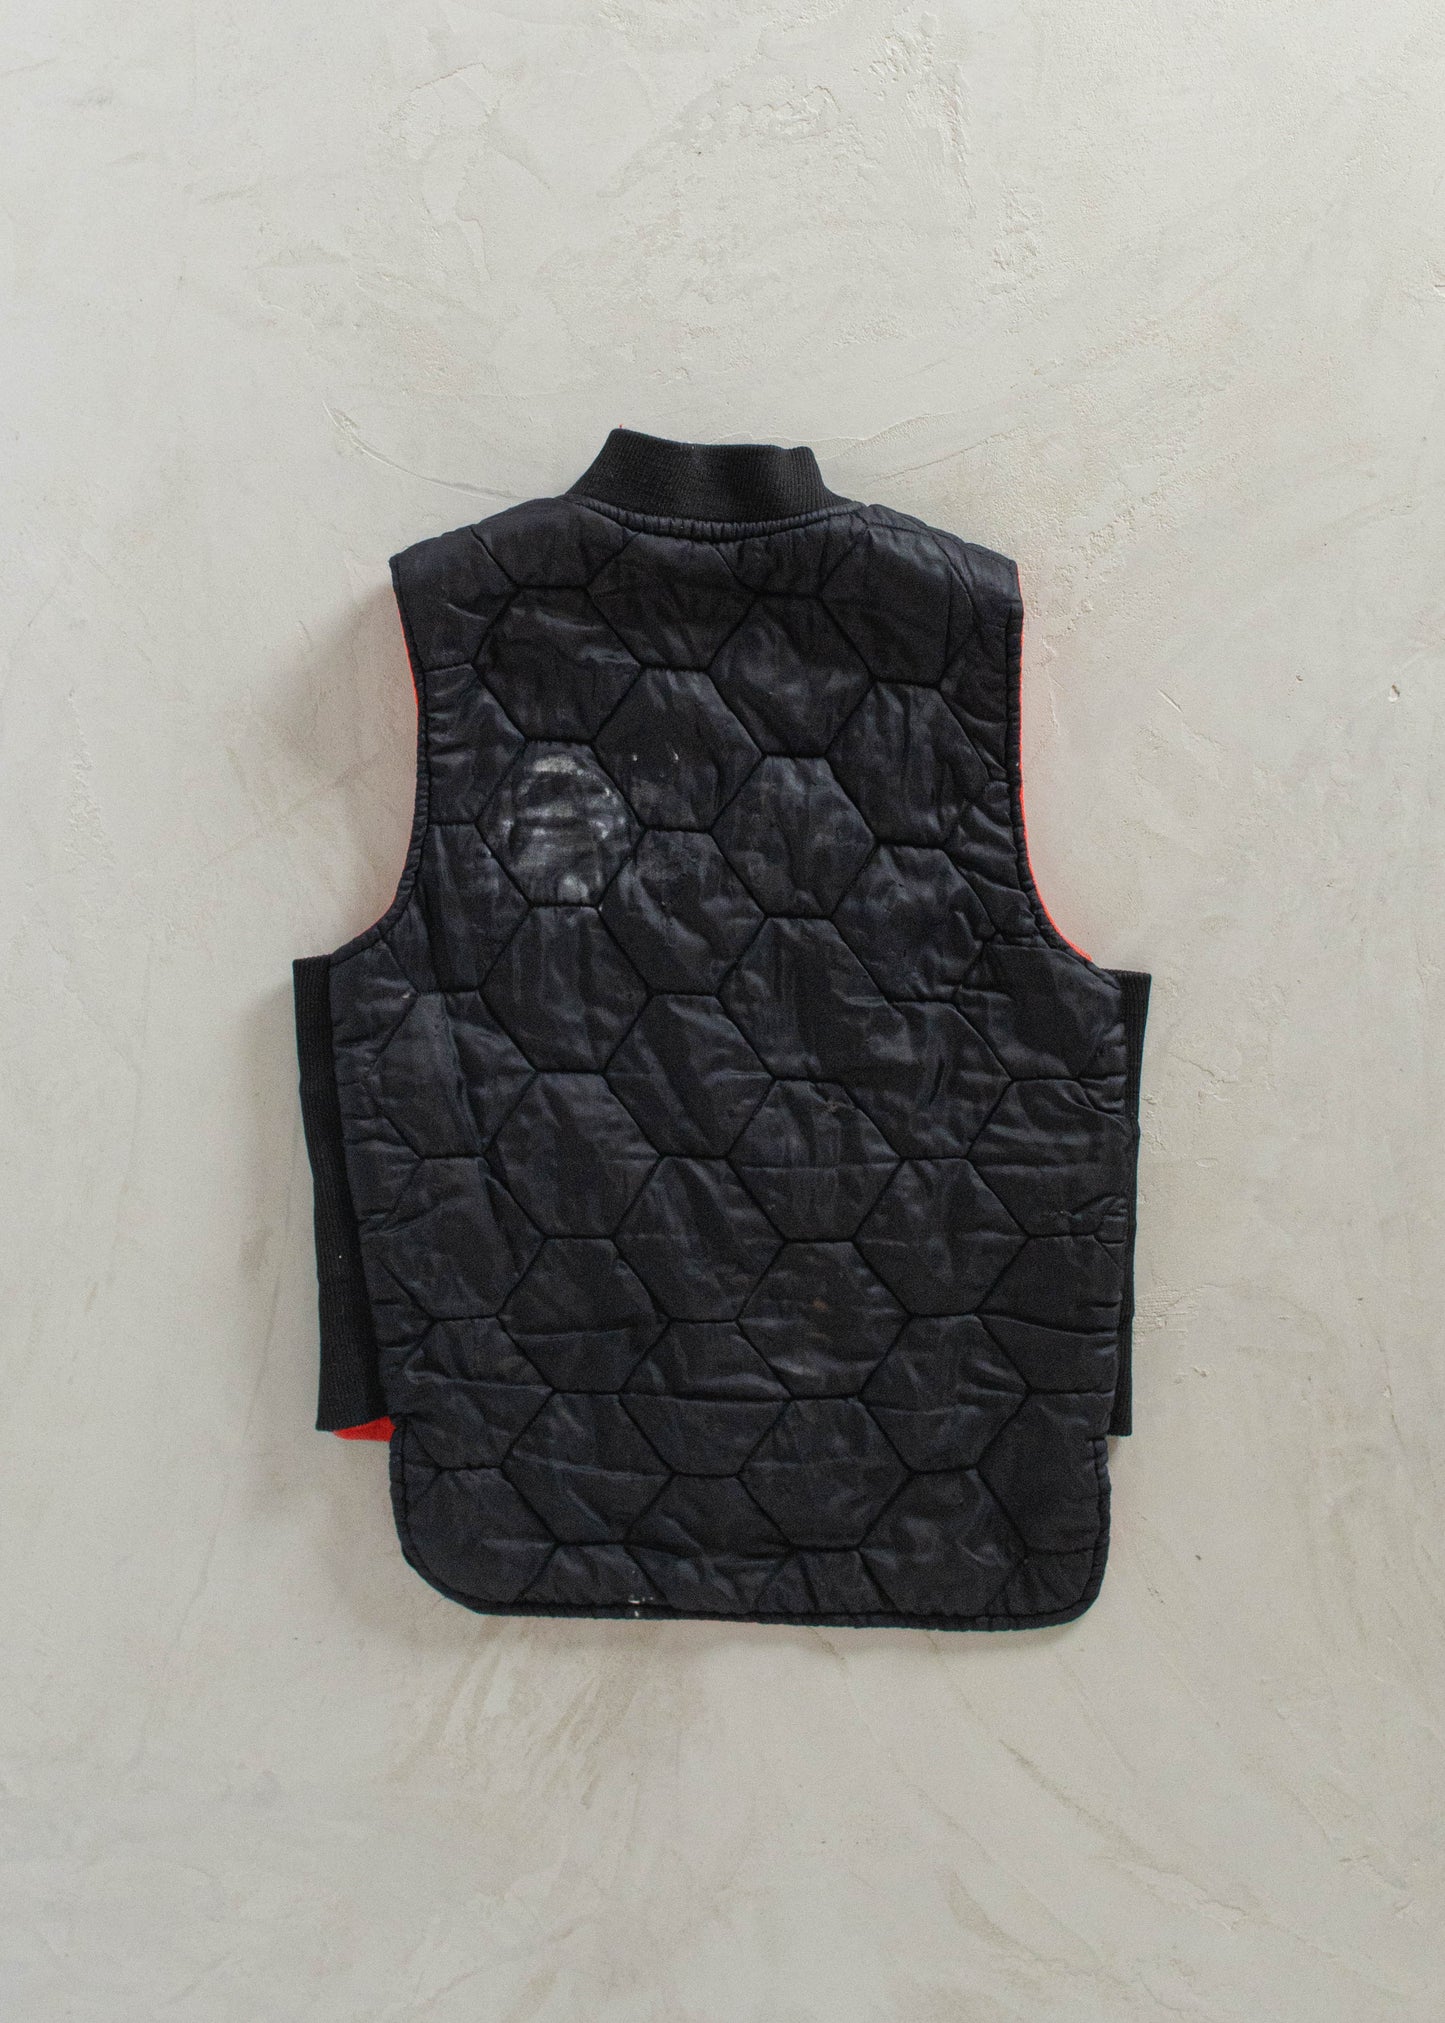 1980s Nylon Sherpa Lined Vest Size S/M